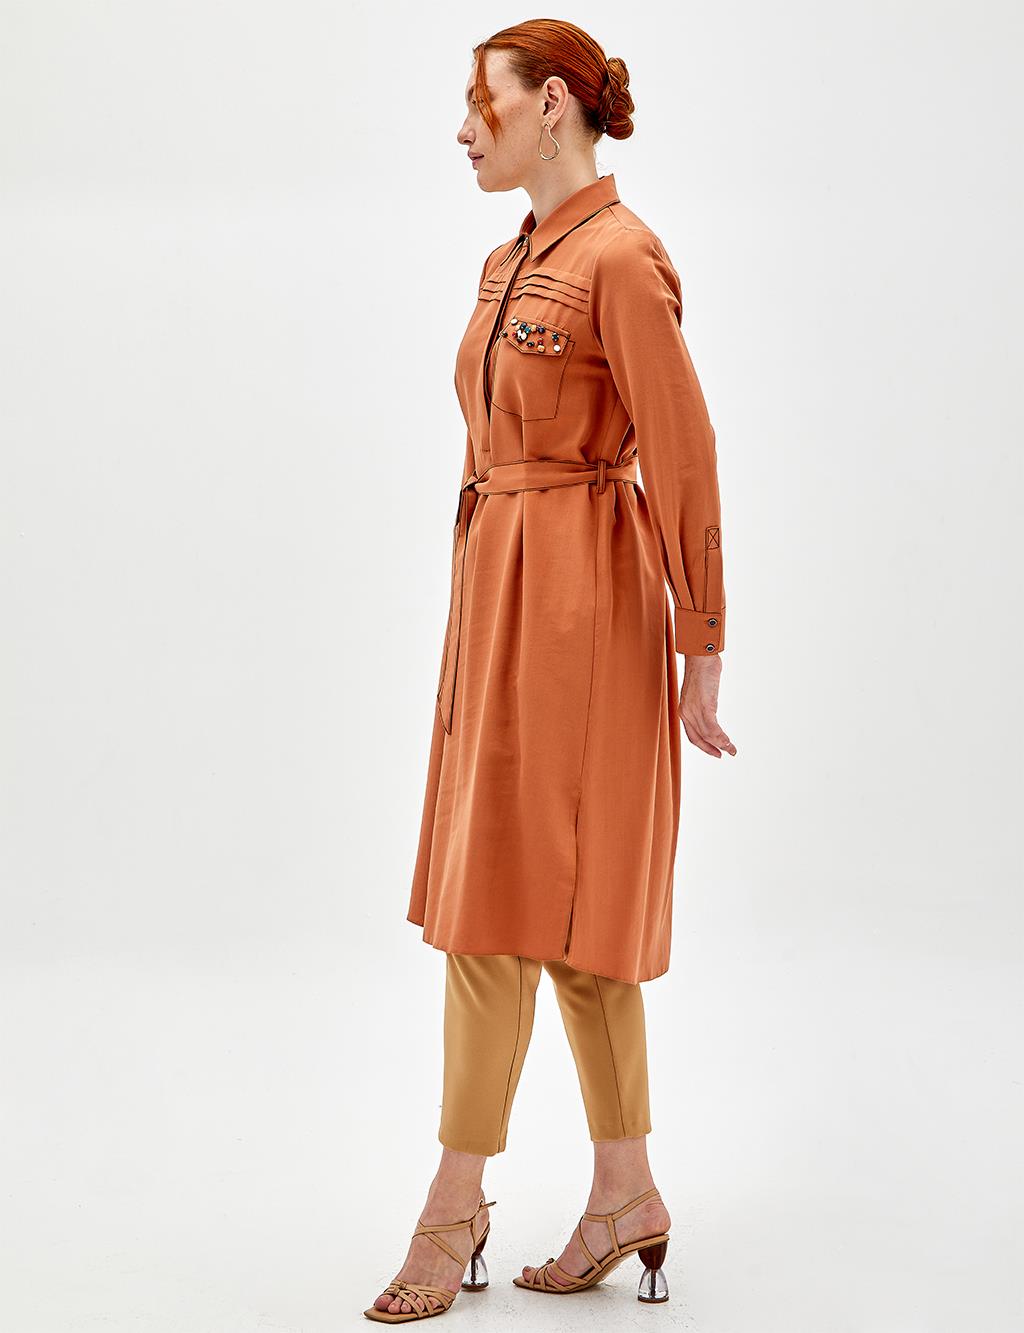 Ribbed Tunic|Dress Orange